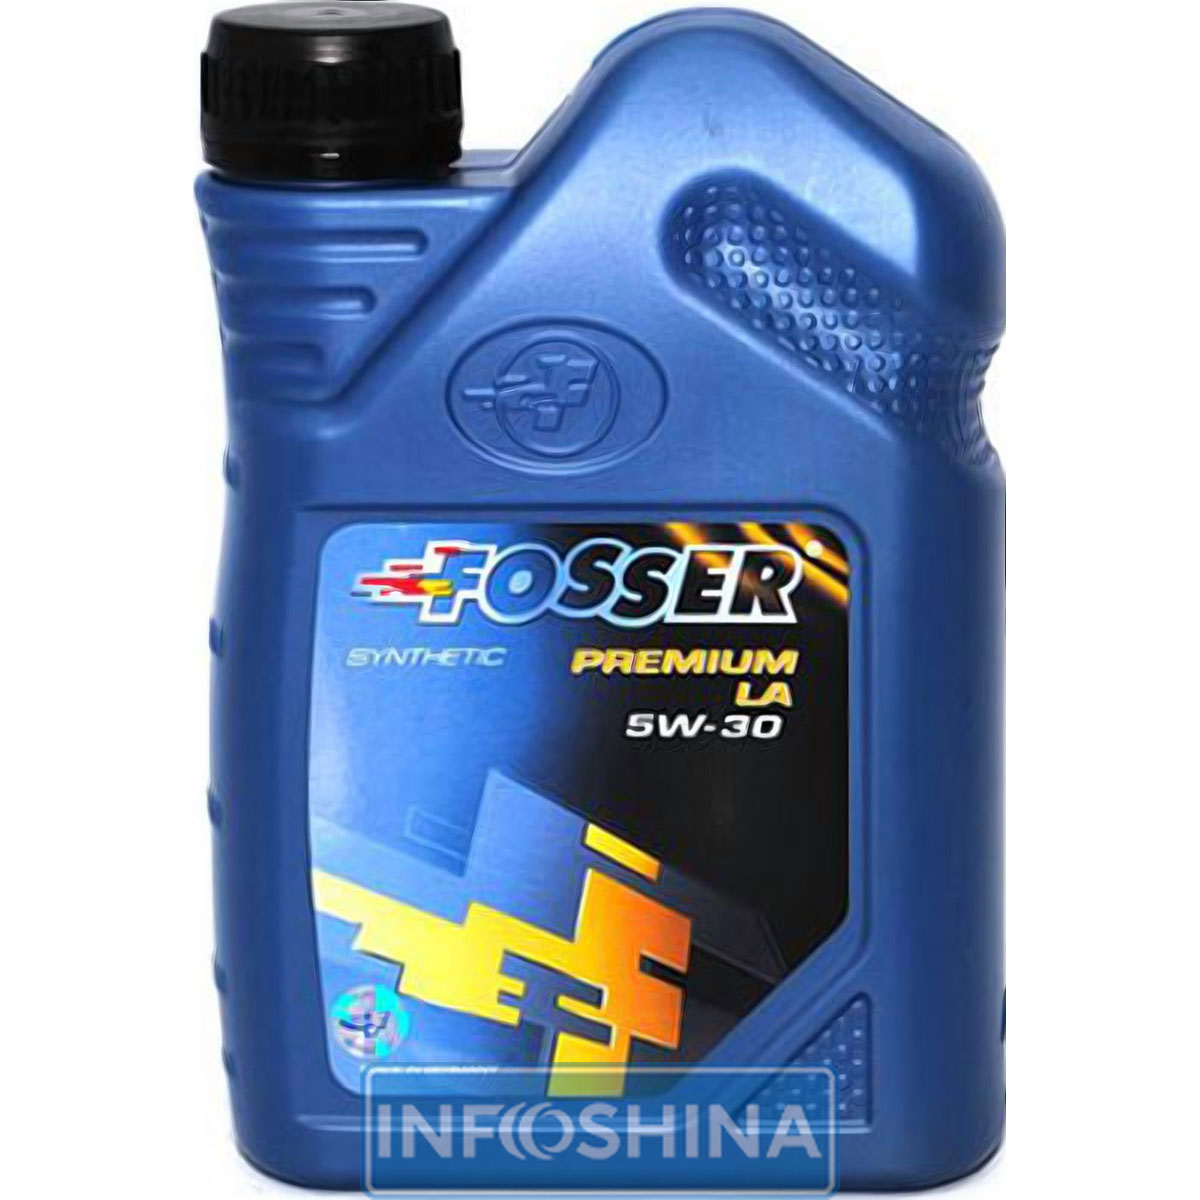 Fosser Premium LA 5W-30